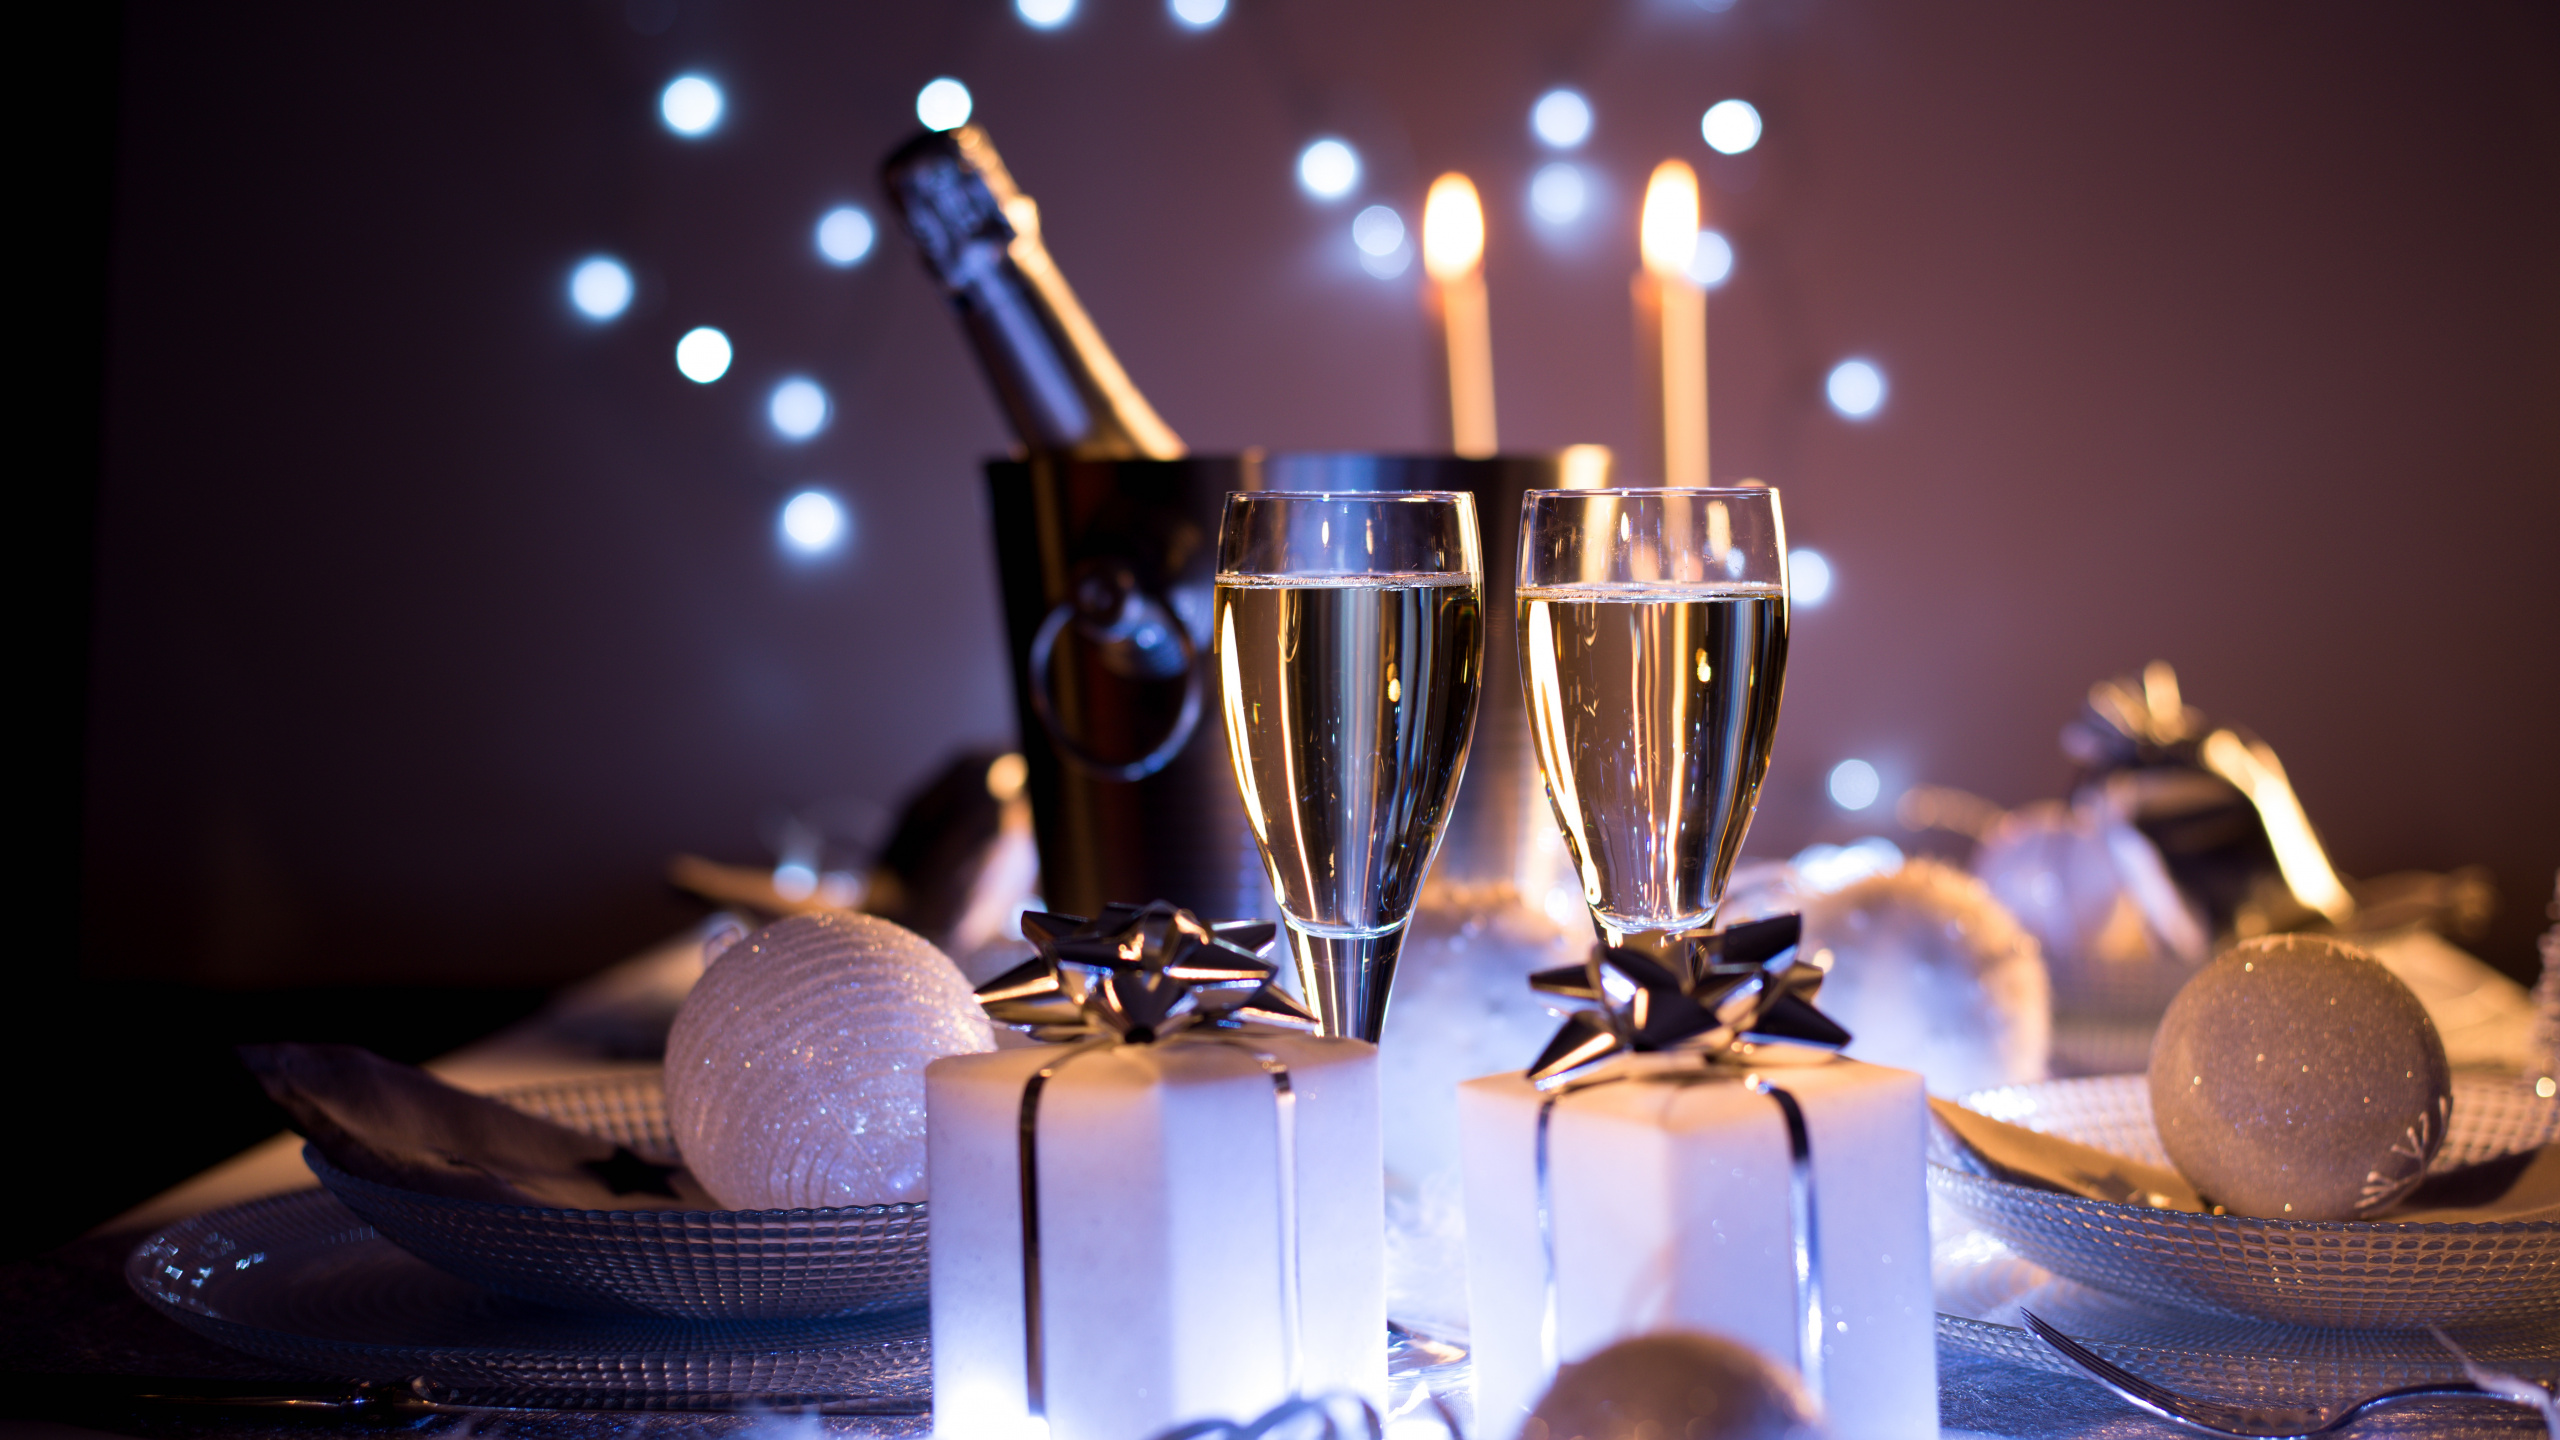 香槟, 葡萄酒, 新年前夕, 新的一年, 仍然生活 壁纸 2560x1440 允许